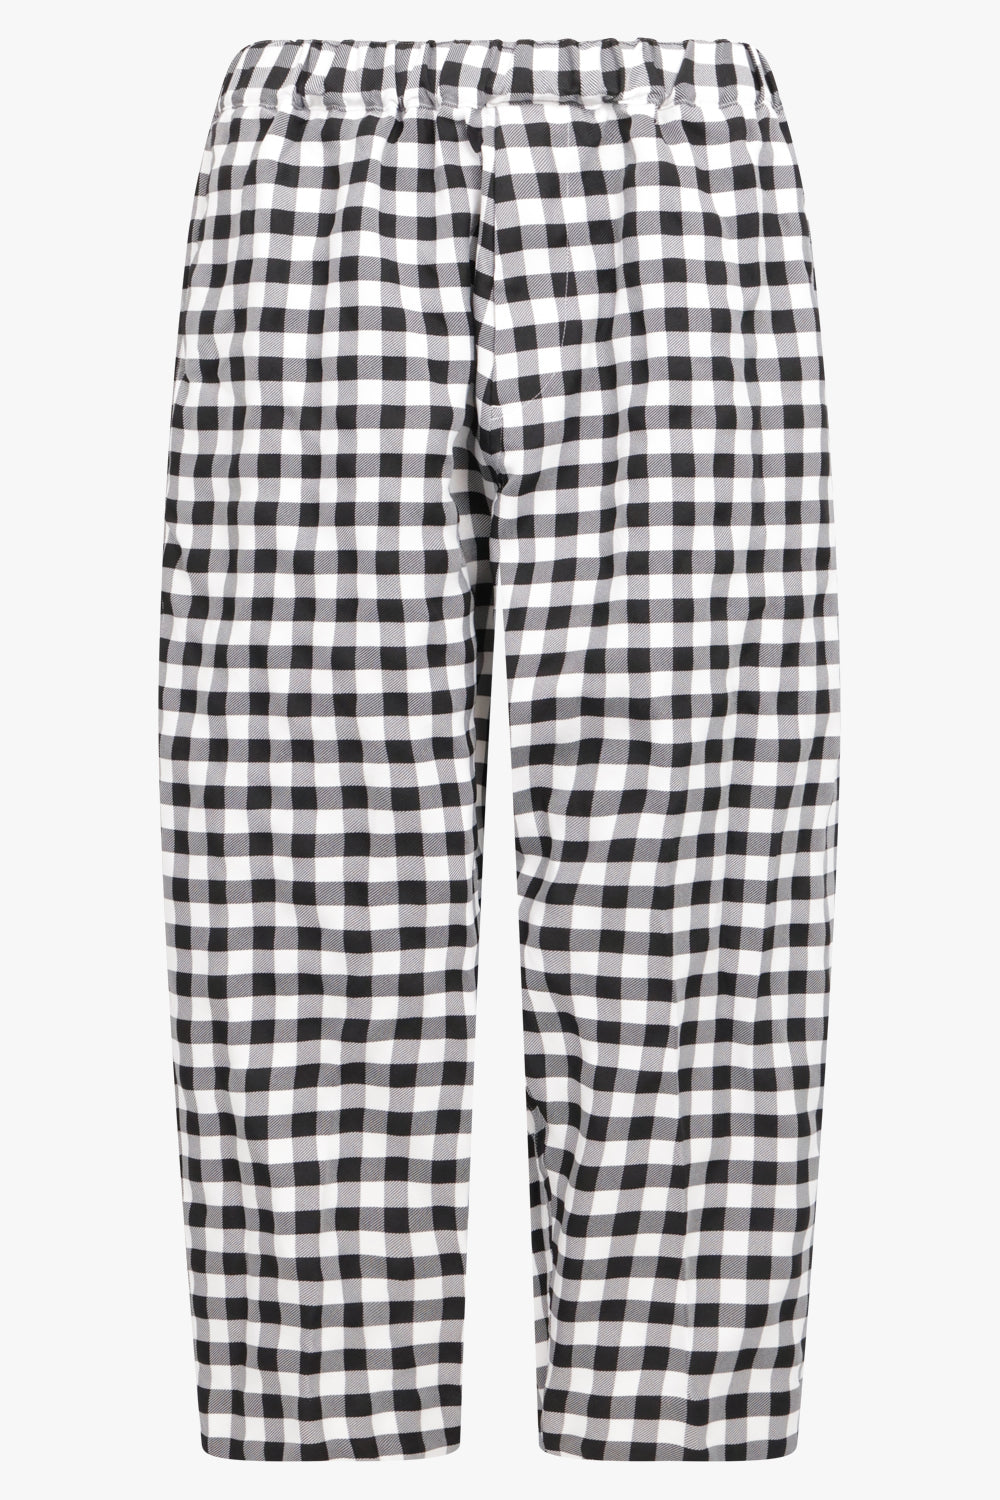 Asymmetric Gingham Check Pant | Black/White